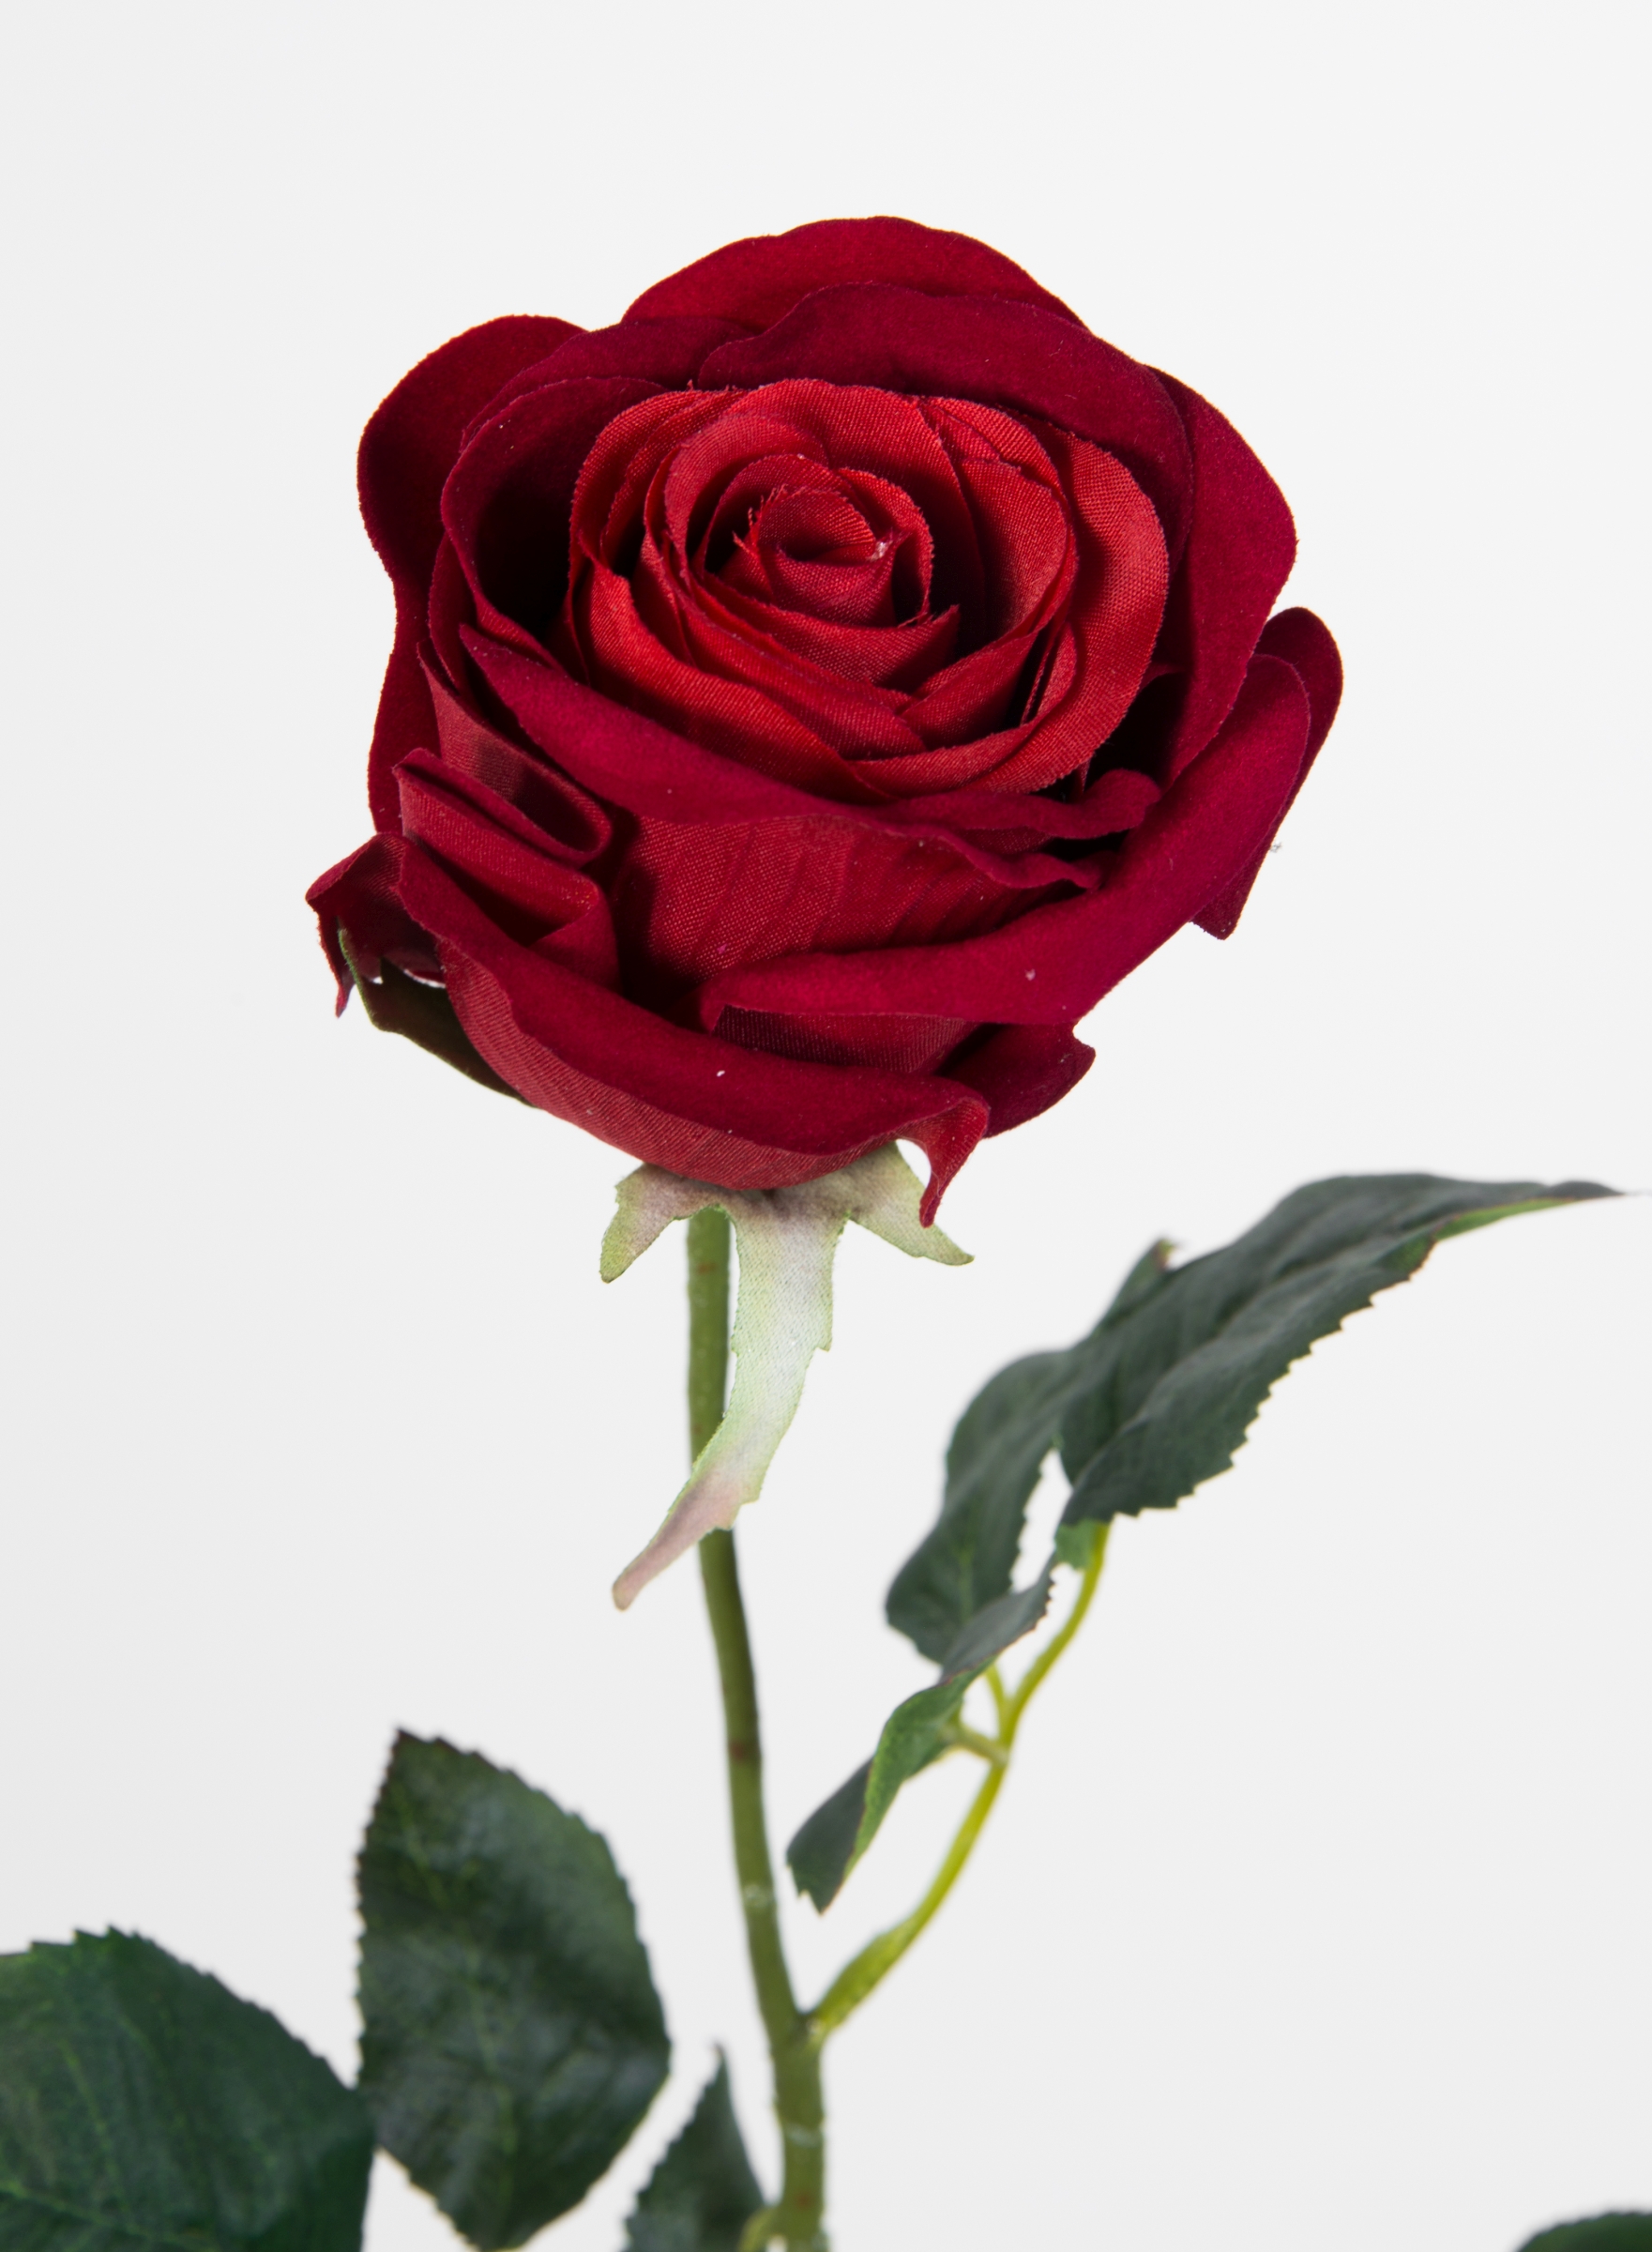 12 Stück Baccararose 68cm rot PM Kunstblumen künstliche Rose Rosen Blumen  Seidenblumen